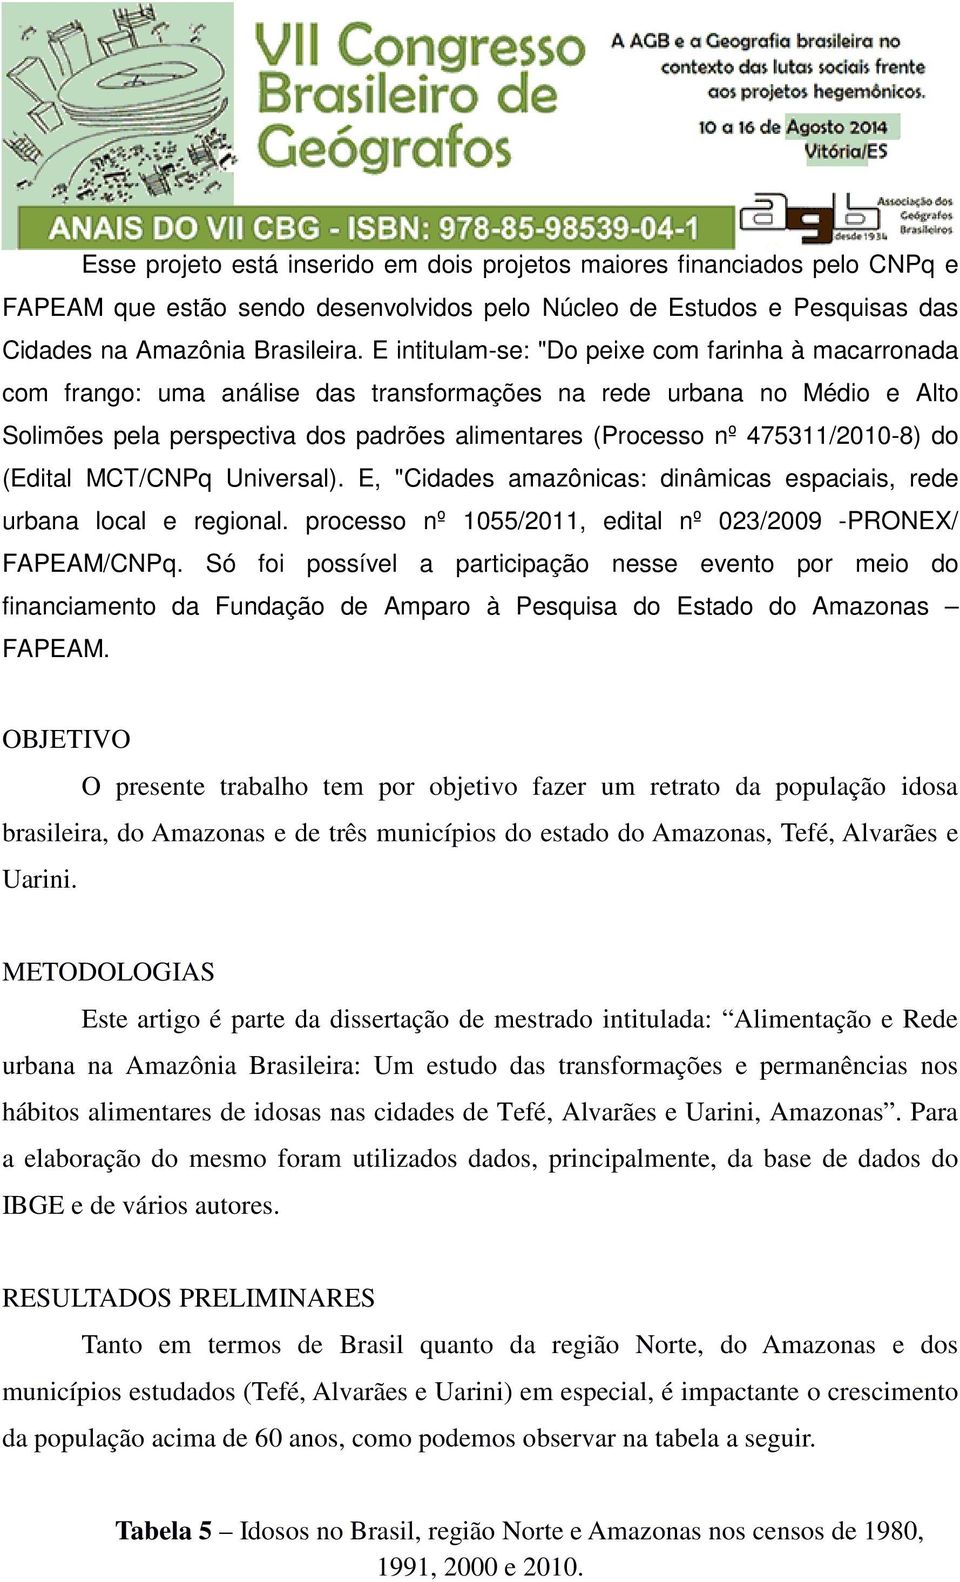 475311/2010-8) do (Edital MCT/CNPq Universal). E, "Cidades amazônicas: dinâmicas espaciais, rede urbana local e regional. processo nº 1055/2011, edital nº 023/2009 -PRONEX/ FAPEAM/CNPq.